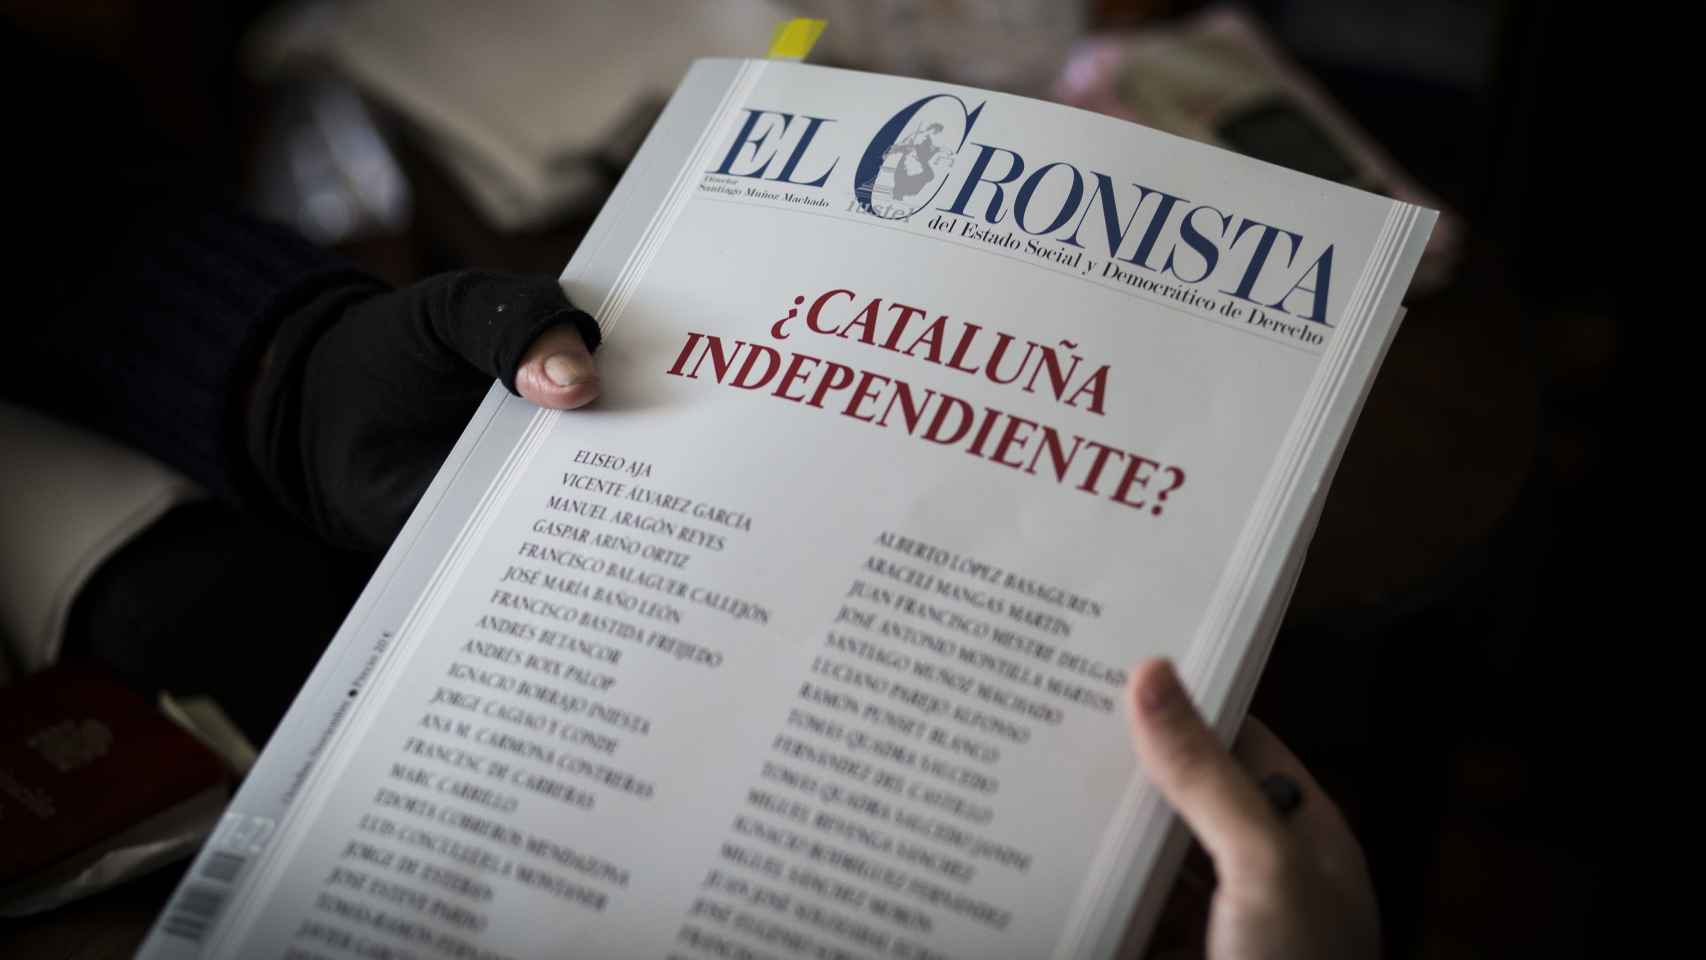 Un ejemplar de 'El Cronista' donde numerosas firmas opinan sobre el conflicto catalán, la reciente lectura de Clavero.